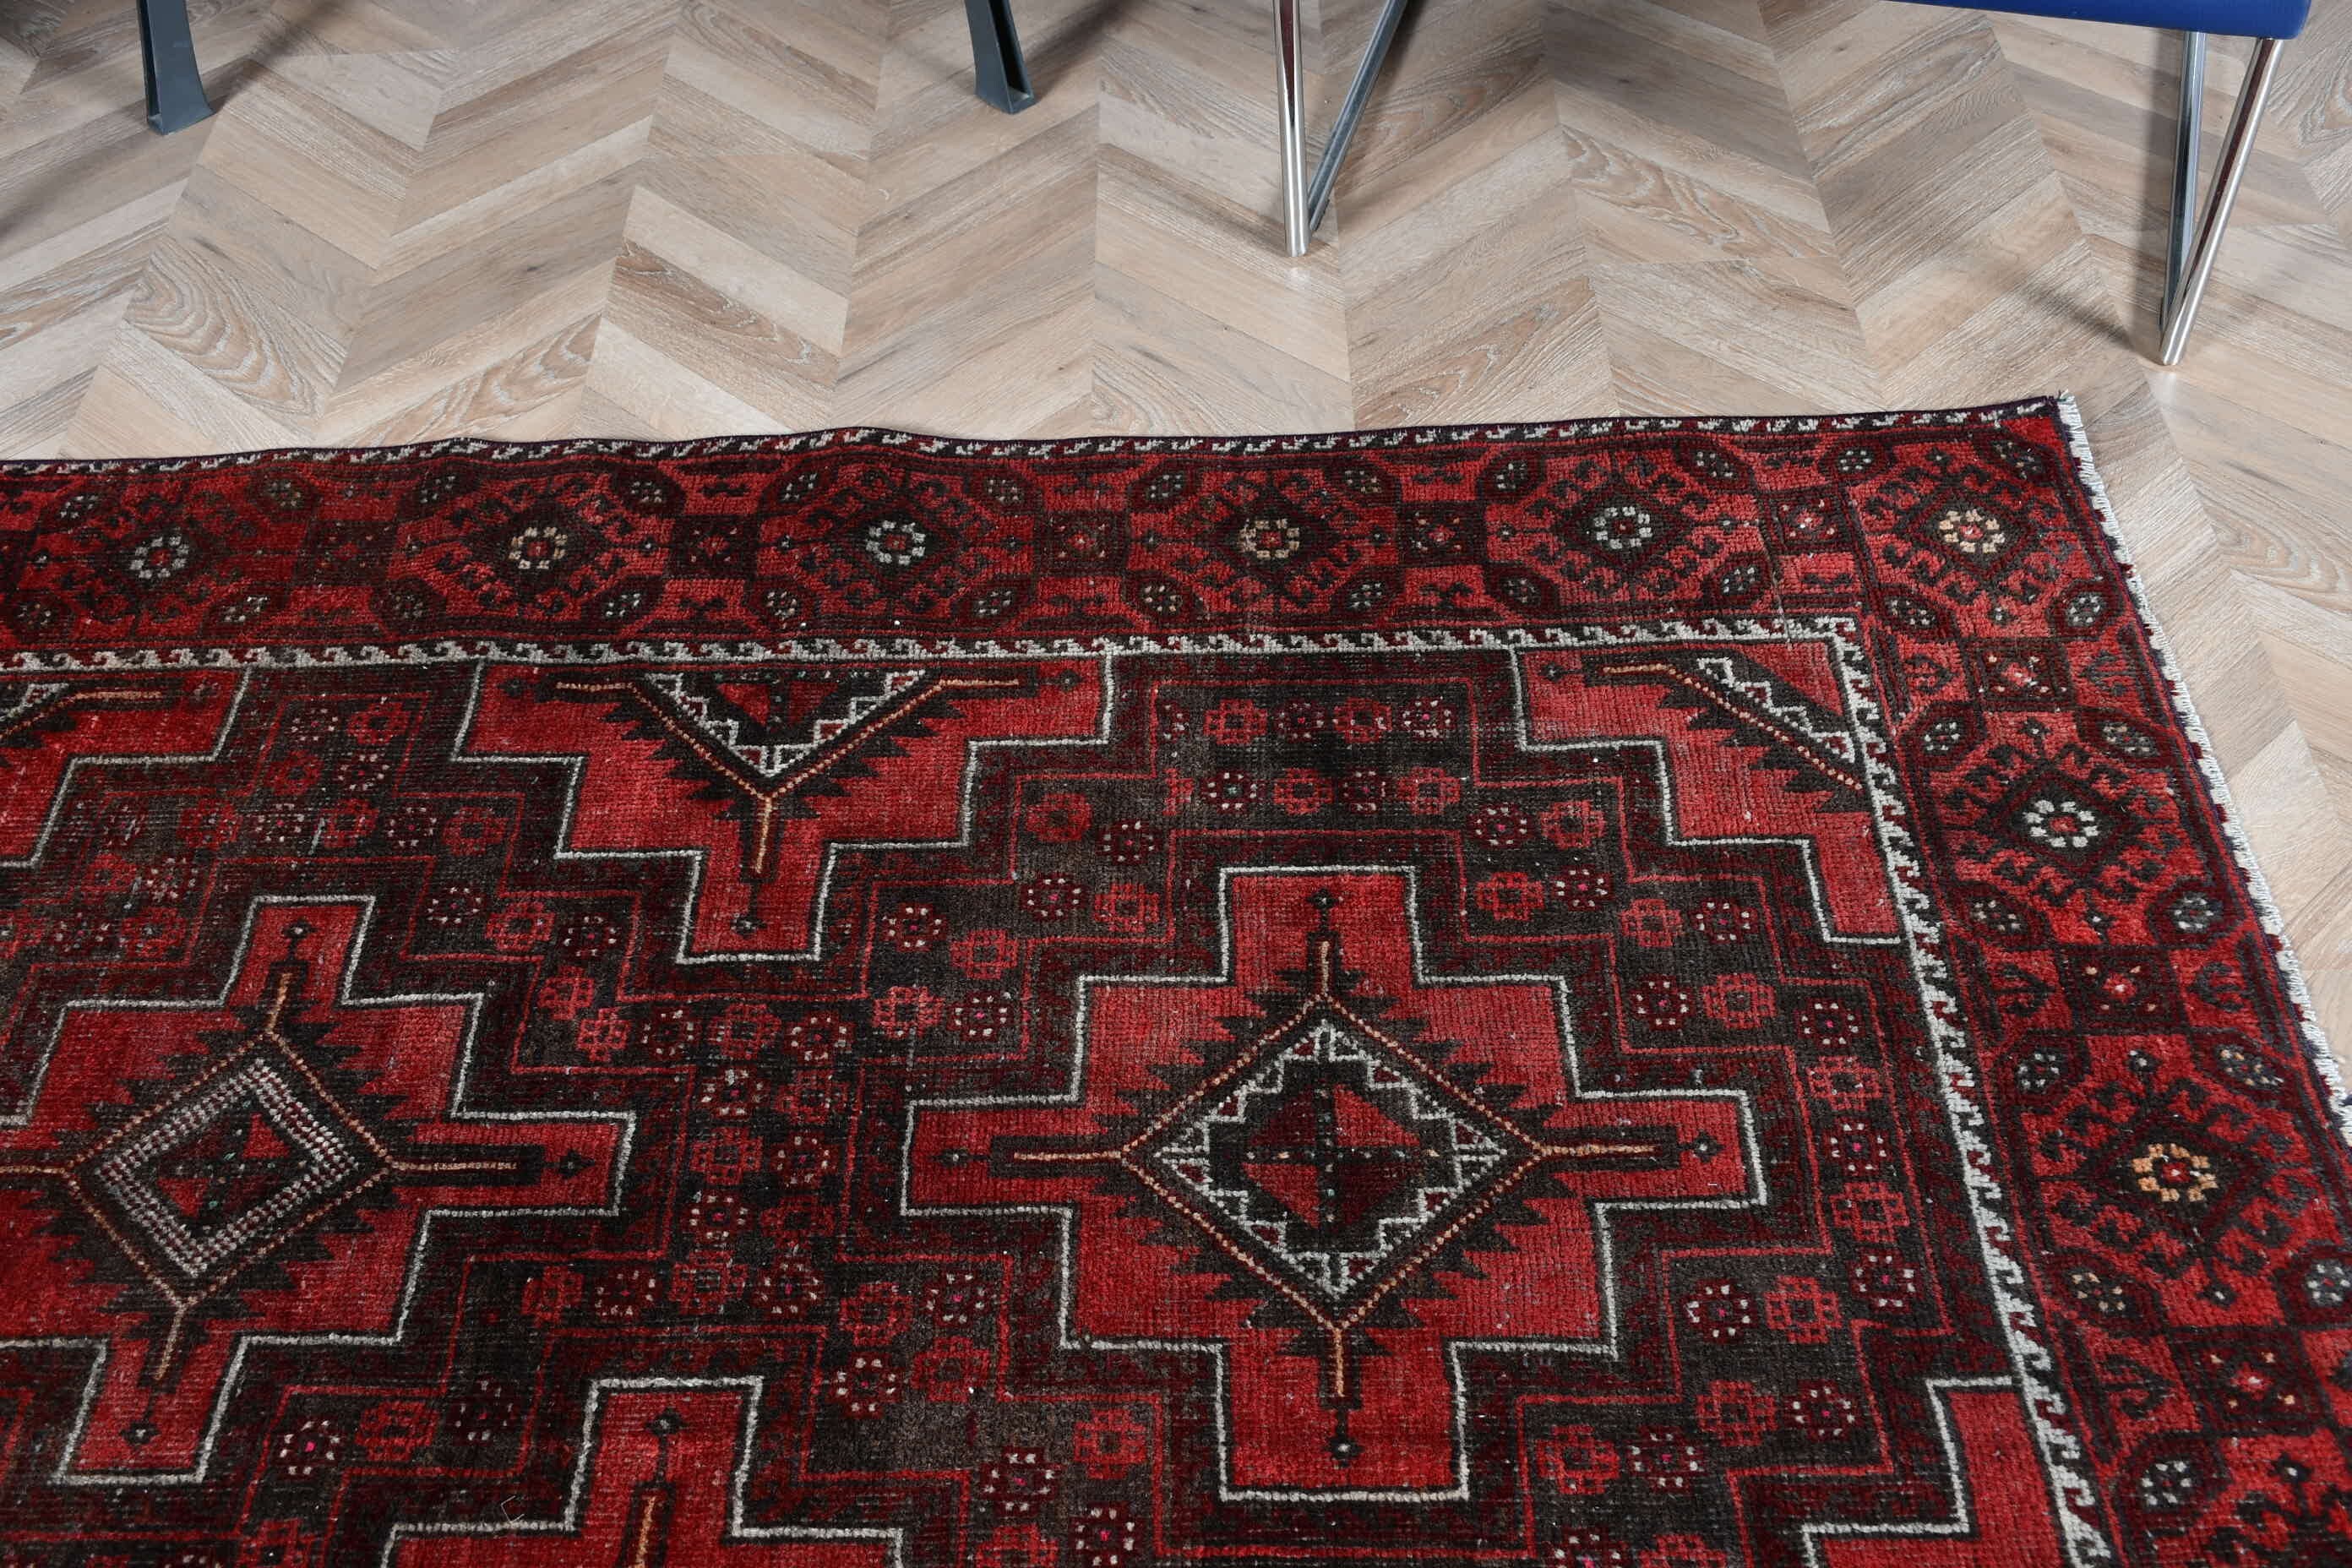 Turkish Rug, Home Decor Rug, Vintage Rug, 4.1x7.3 ft Area Rug, Rugs for Floor, Floor Rug, Red Home Decor Rugs, Bedroom Rugs, Kitchen Rug